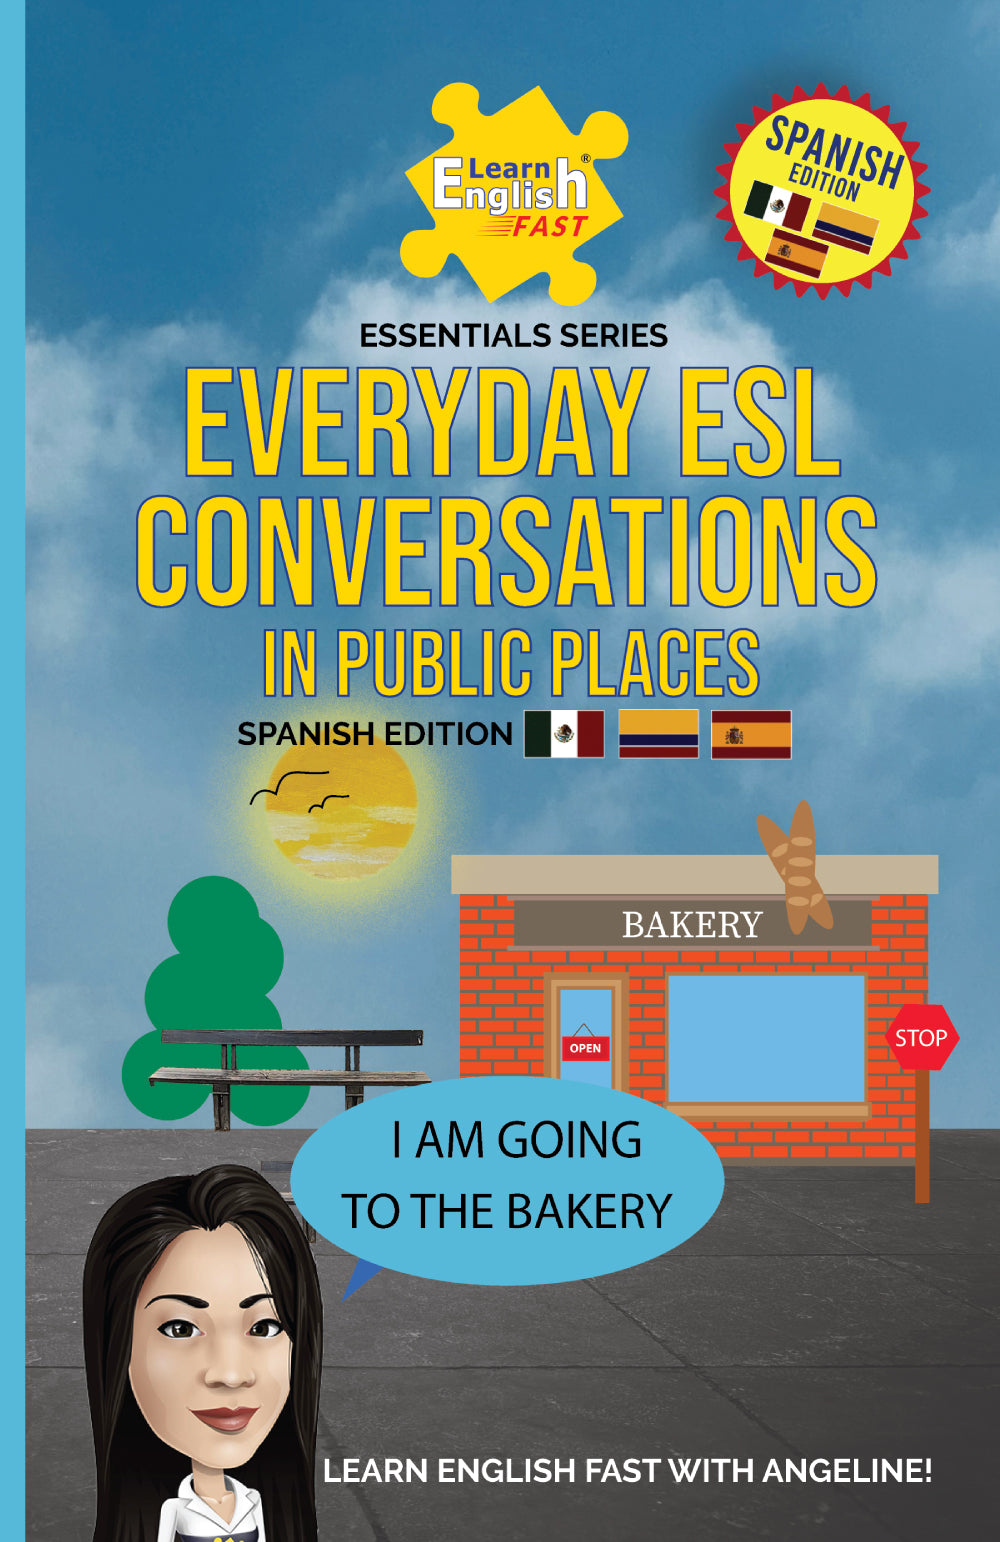 Libro bilingüe inglés español para practicar conversaciones fáciles en inglés.